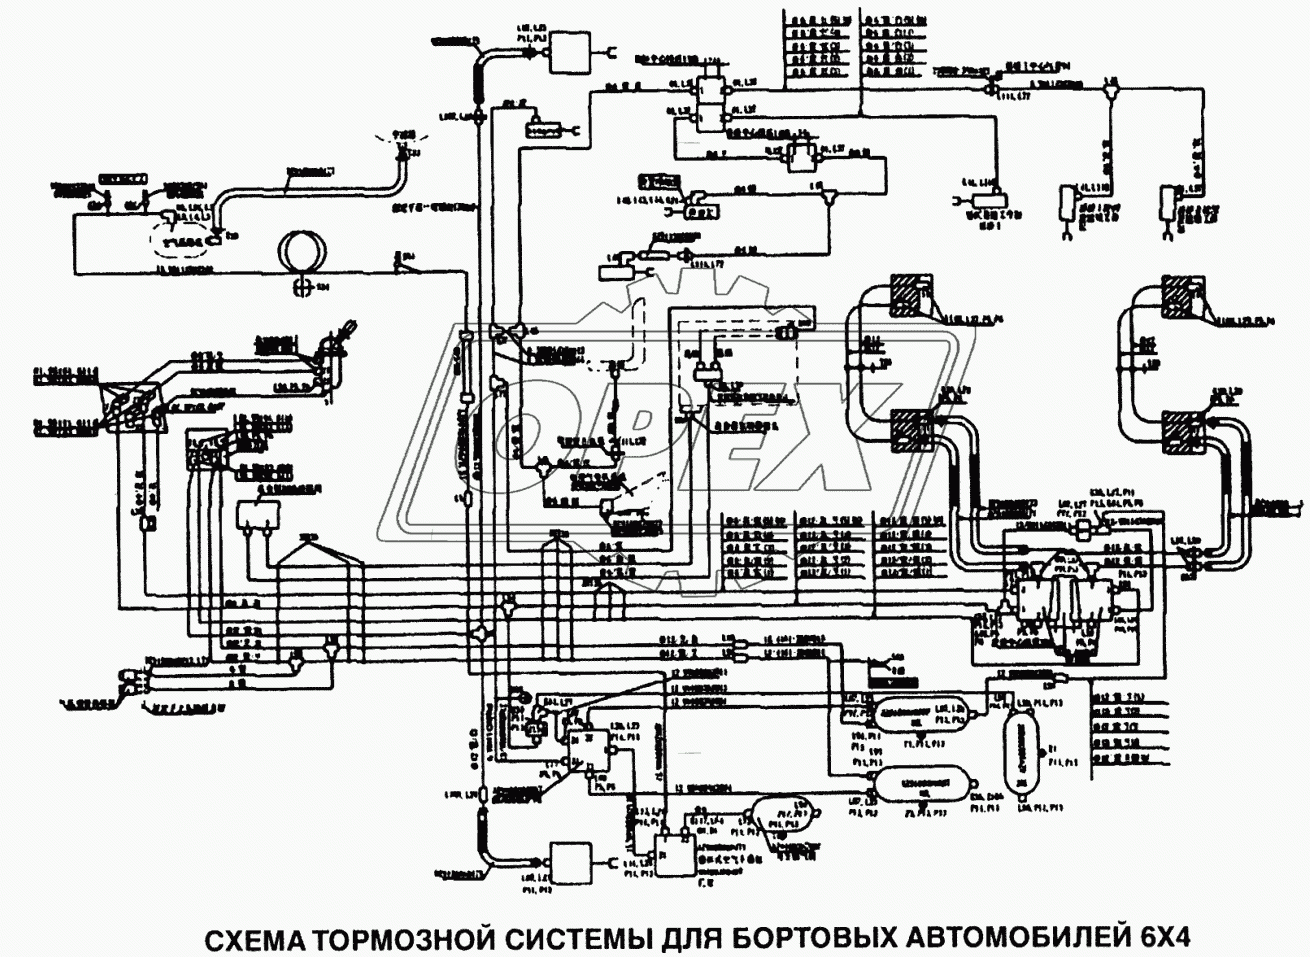 Схема тормозной системы для бортовых автомобилей 6x4